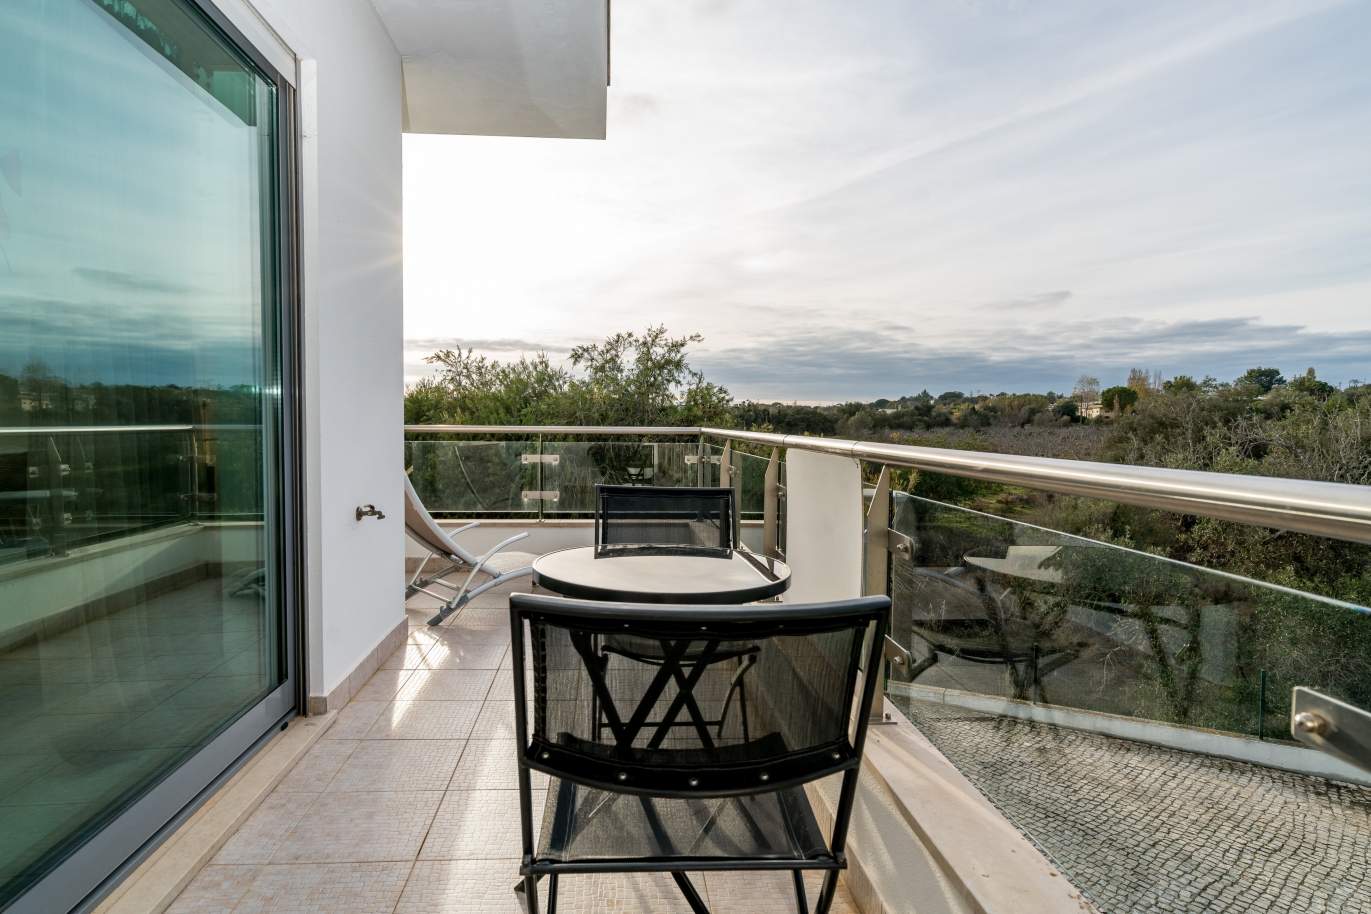 Sale of villa in private condominium in Albufeira, Algarve, Portugal_126888